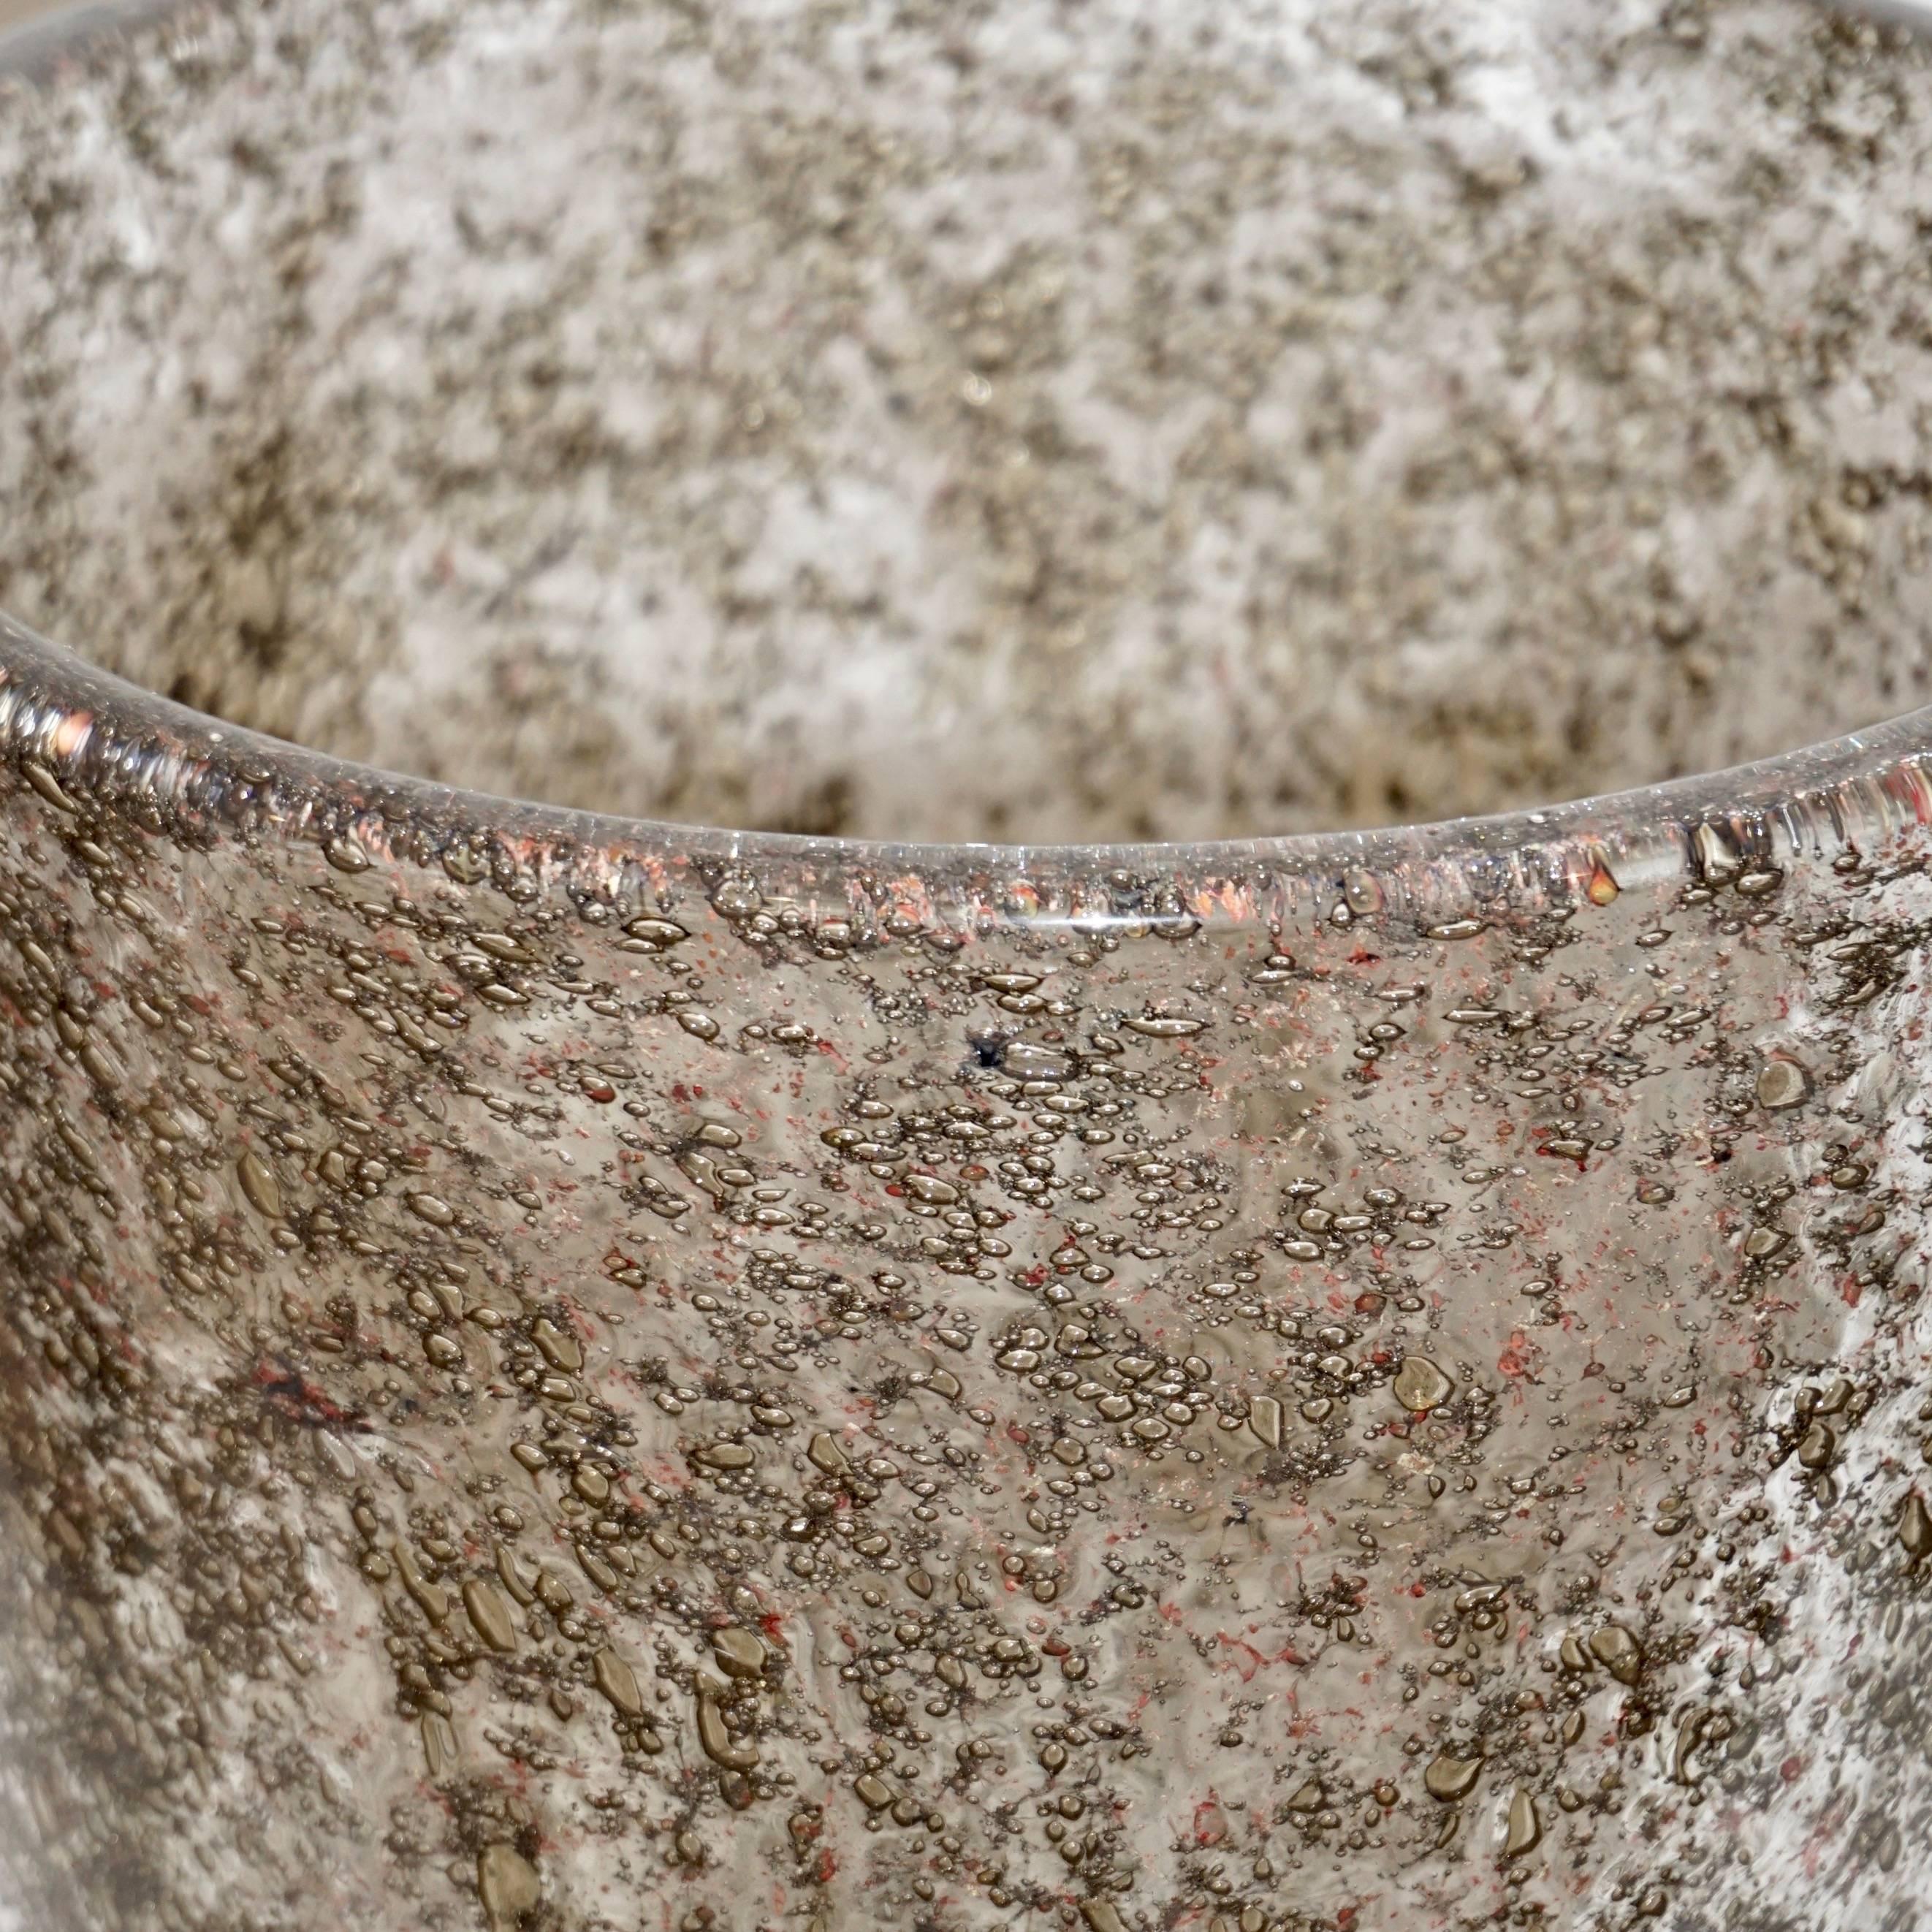 Zeitgenössische Vase aus organischem venezianischem Murano-Glas mit Überfang, geblasen mit einer schwierigen innovativen Technik mit metallischen Messingeinschlüssen, die eine seltene Bronzefarbe mit rotbraunen Flecken und Blasen im kristallklaren